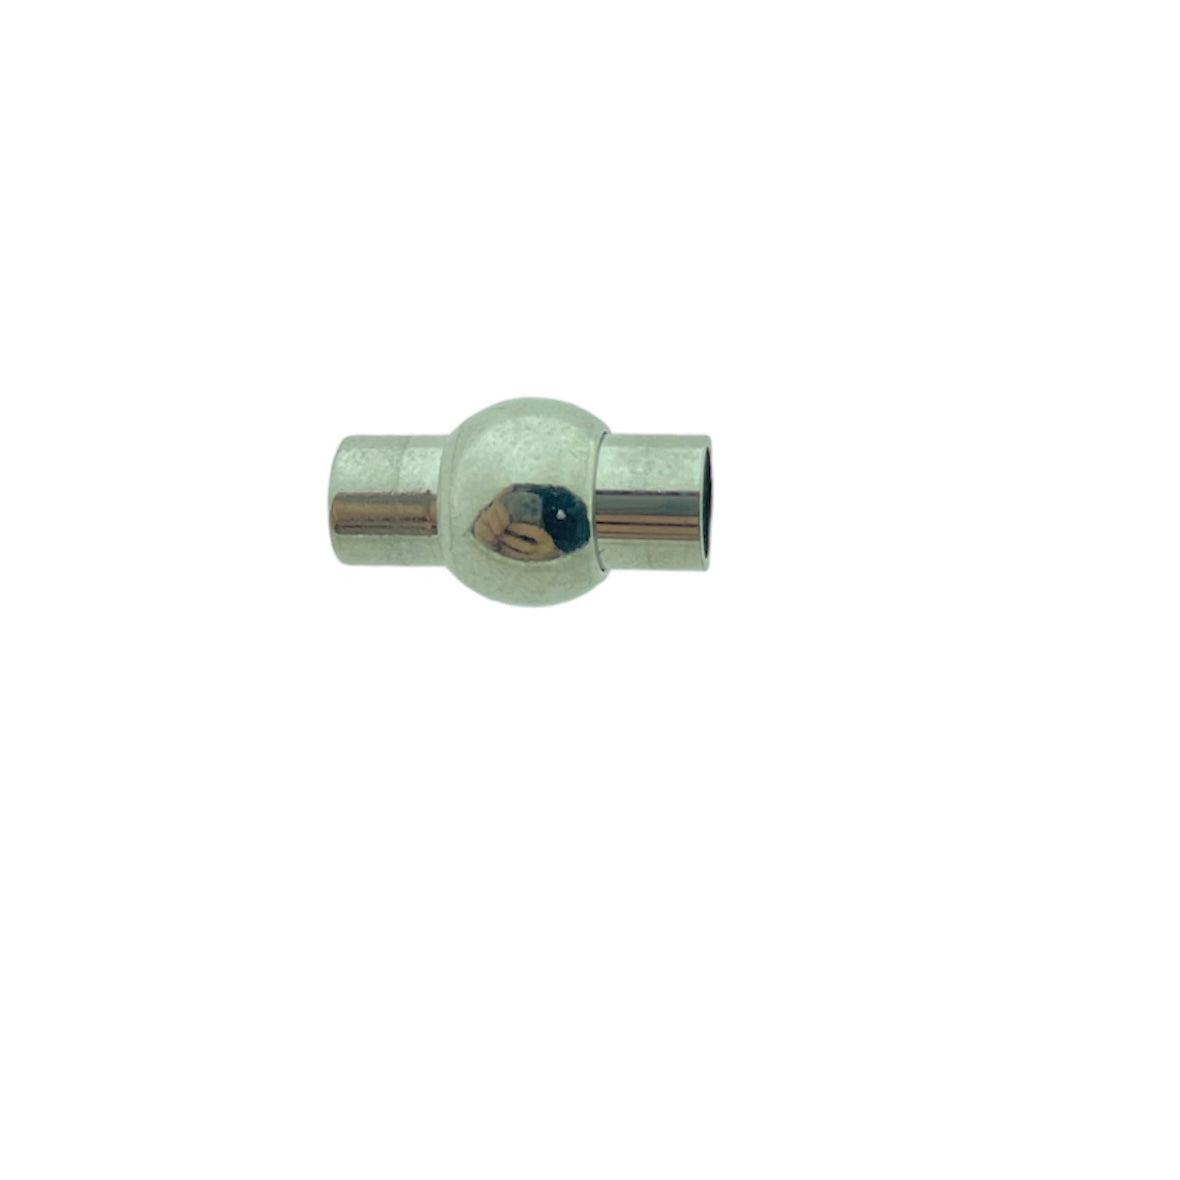 Magneetsluiting RVS zilver 17x5mm-bedels-Kraaltjes van Renate